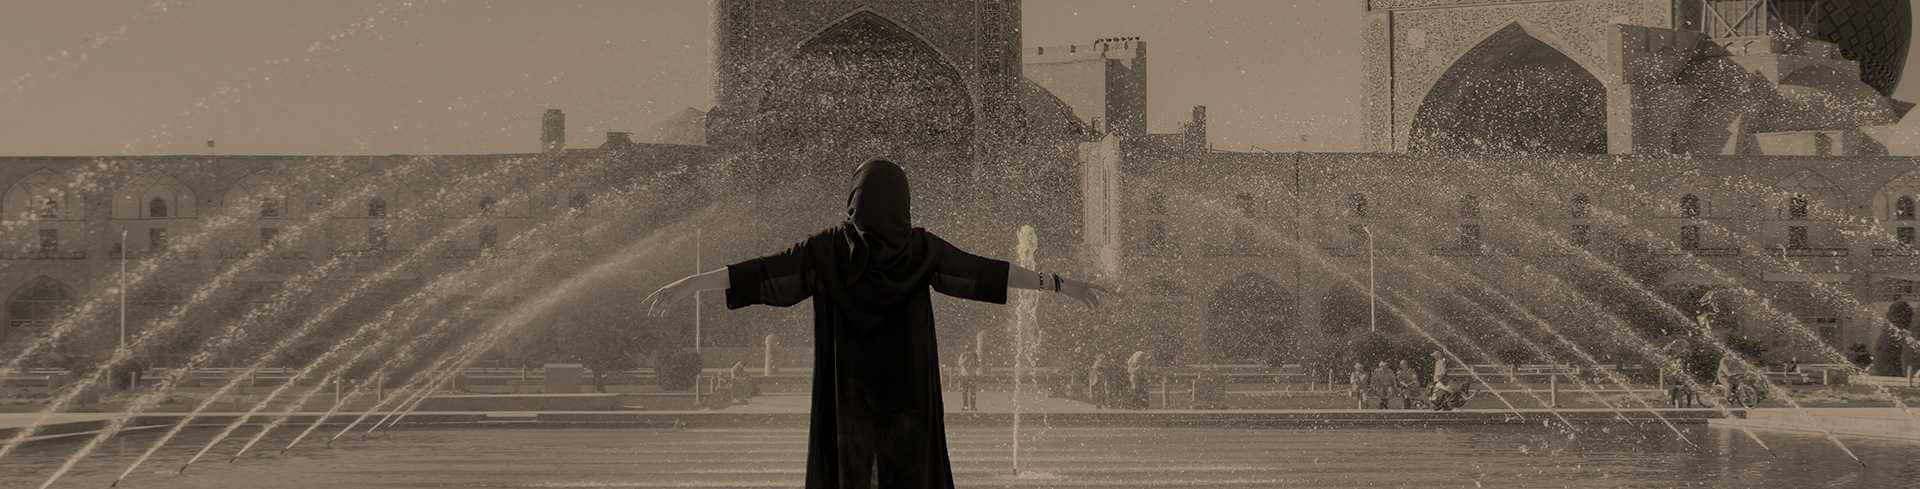 Las dos caras de Irán: modernidad y teocracia islámica